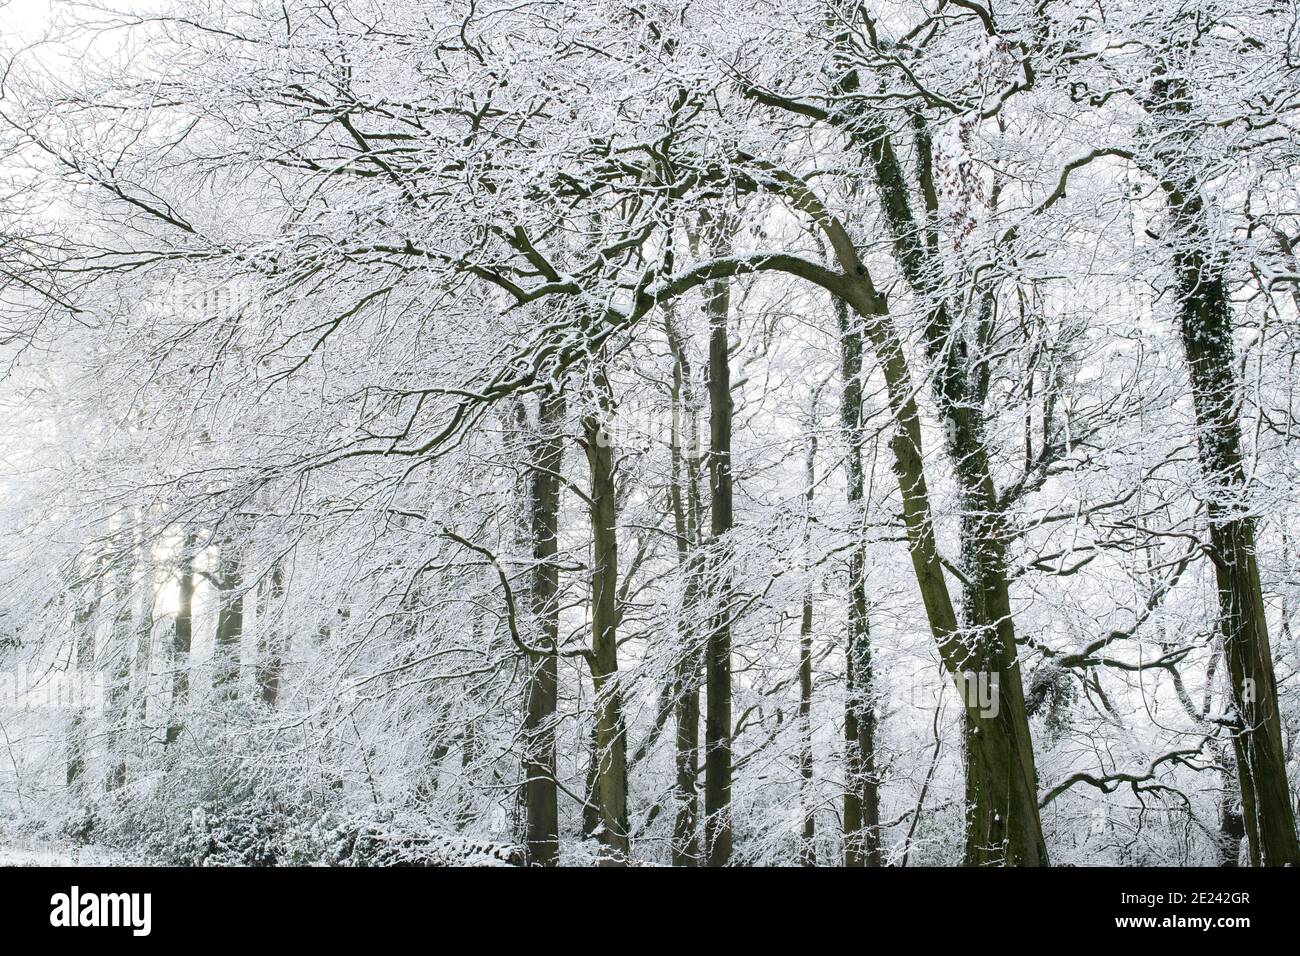 Des arbres enneigés en décembre. Près de Chipping Campden, Cotswolds, Gloucestershire, Angleterre Banque D'Images